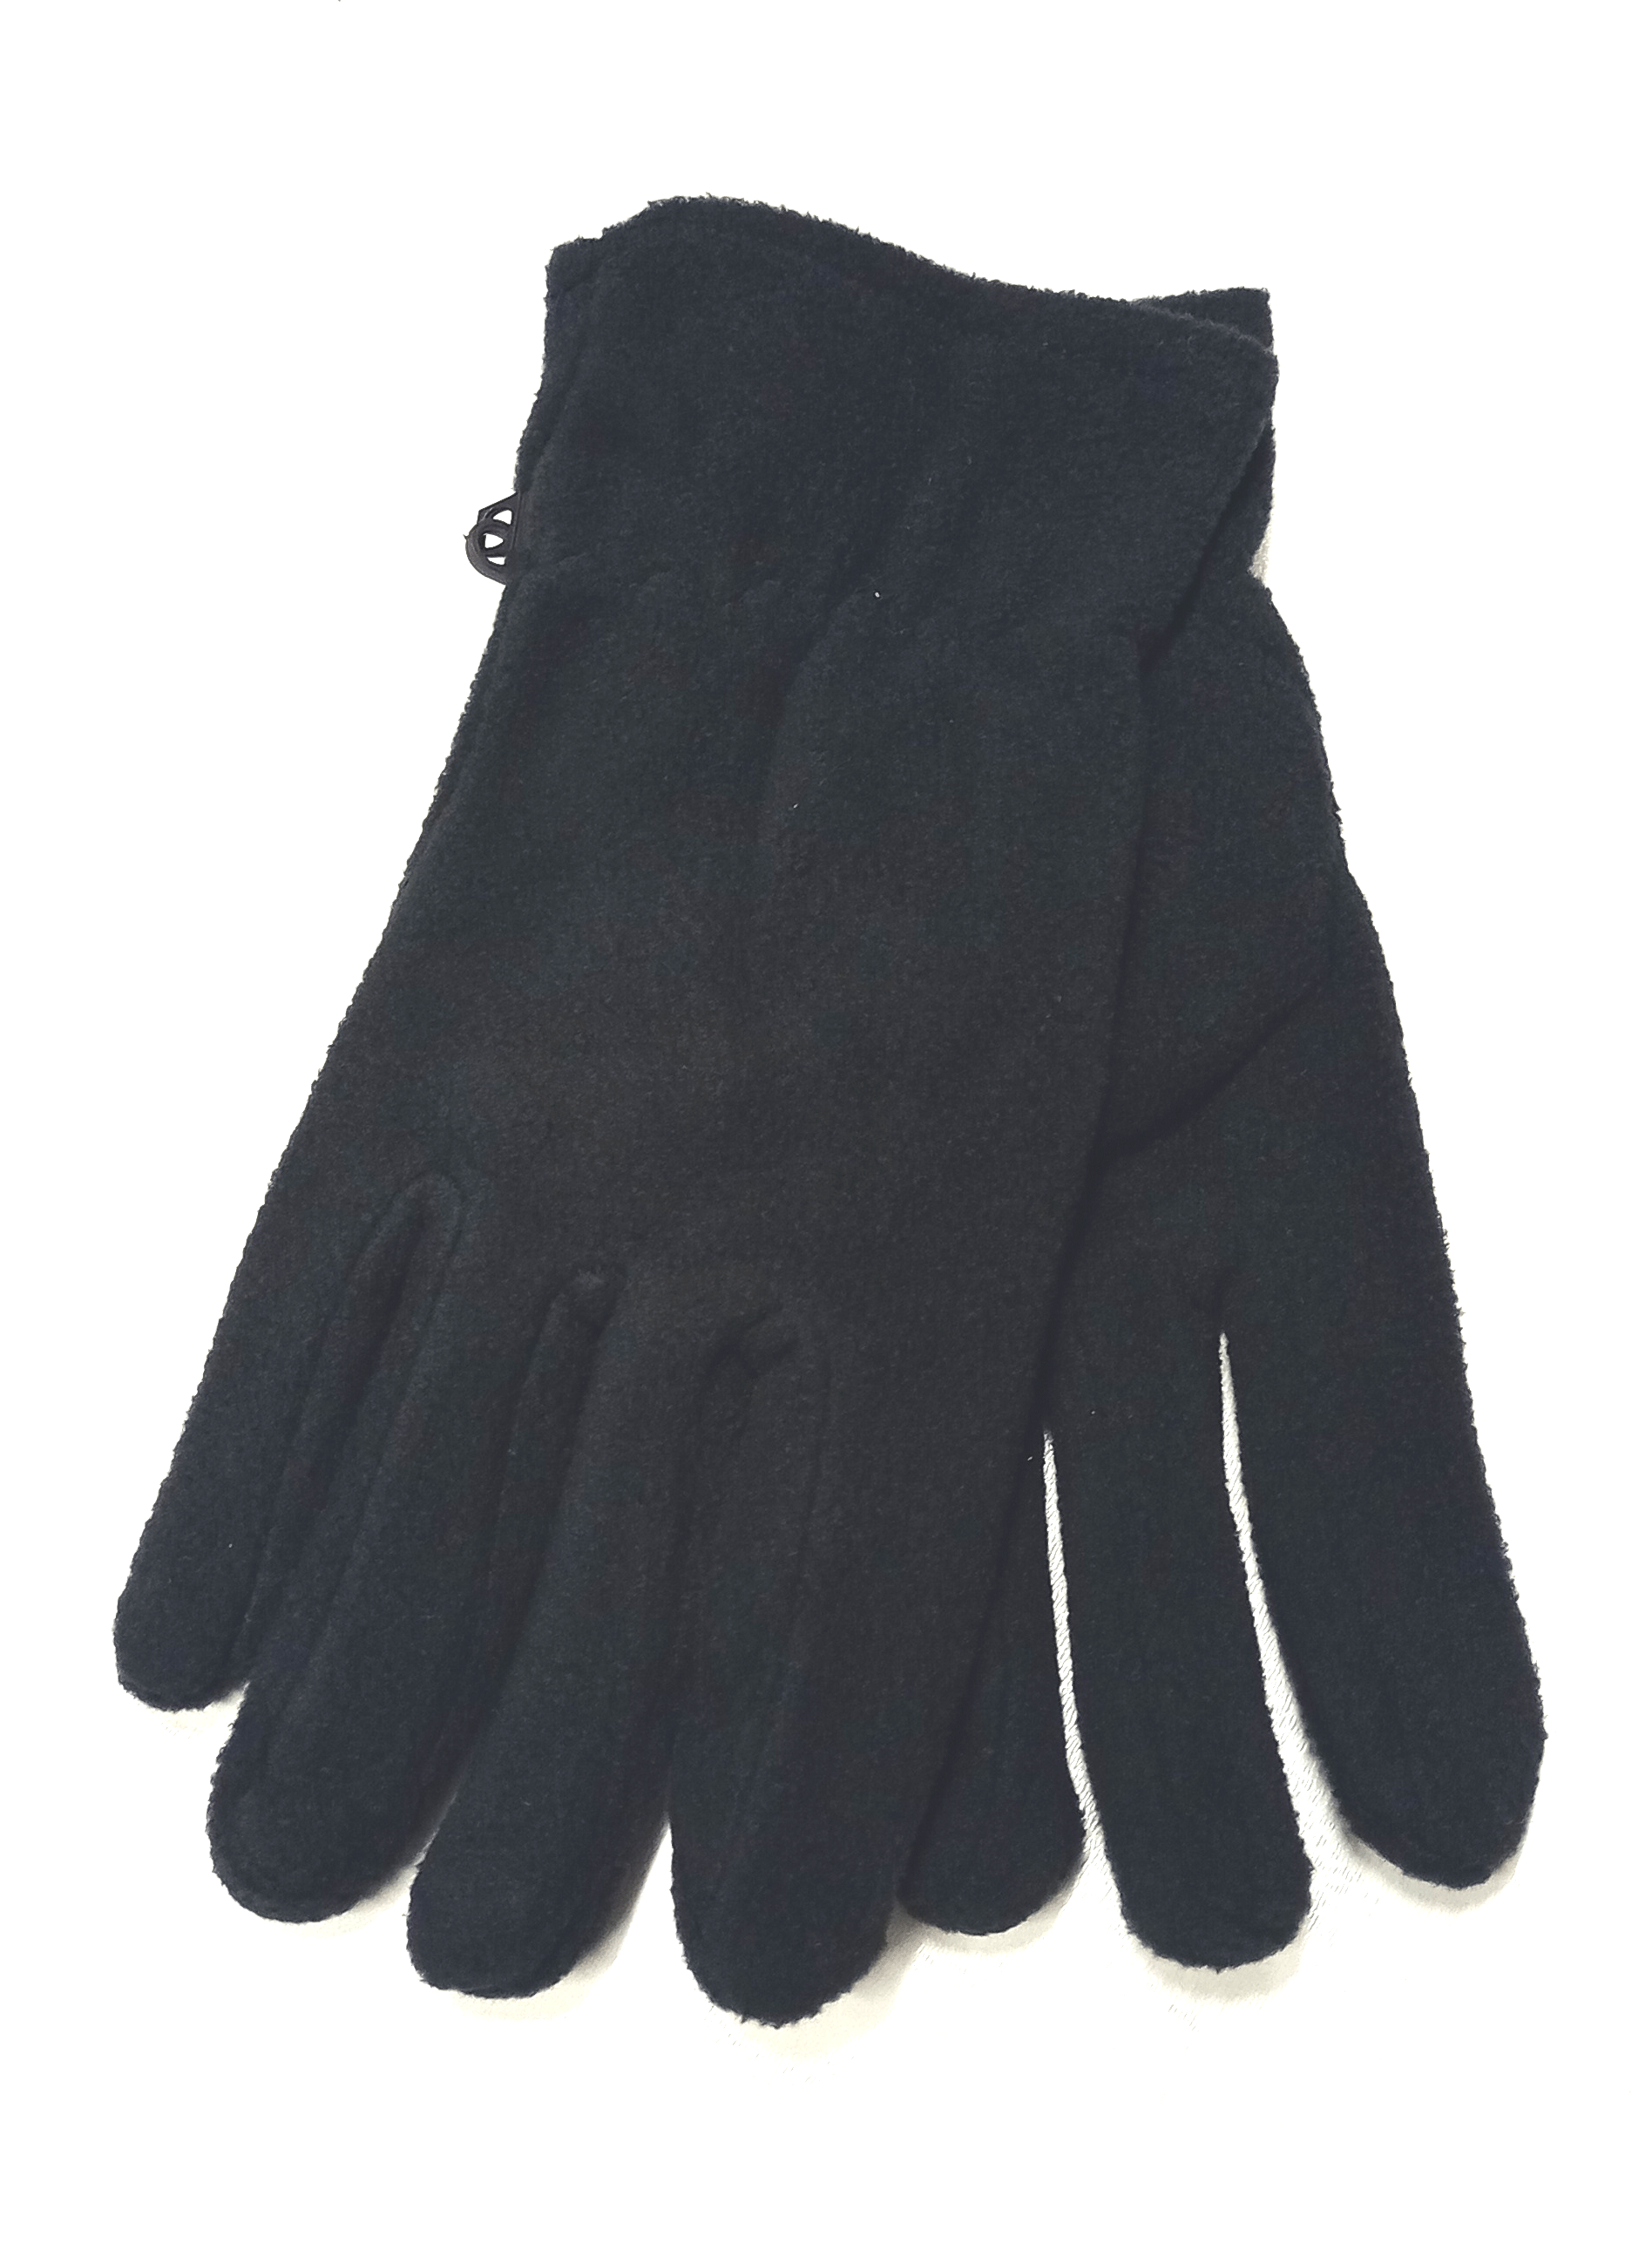 rukavice fleece černé dámské RU 05